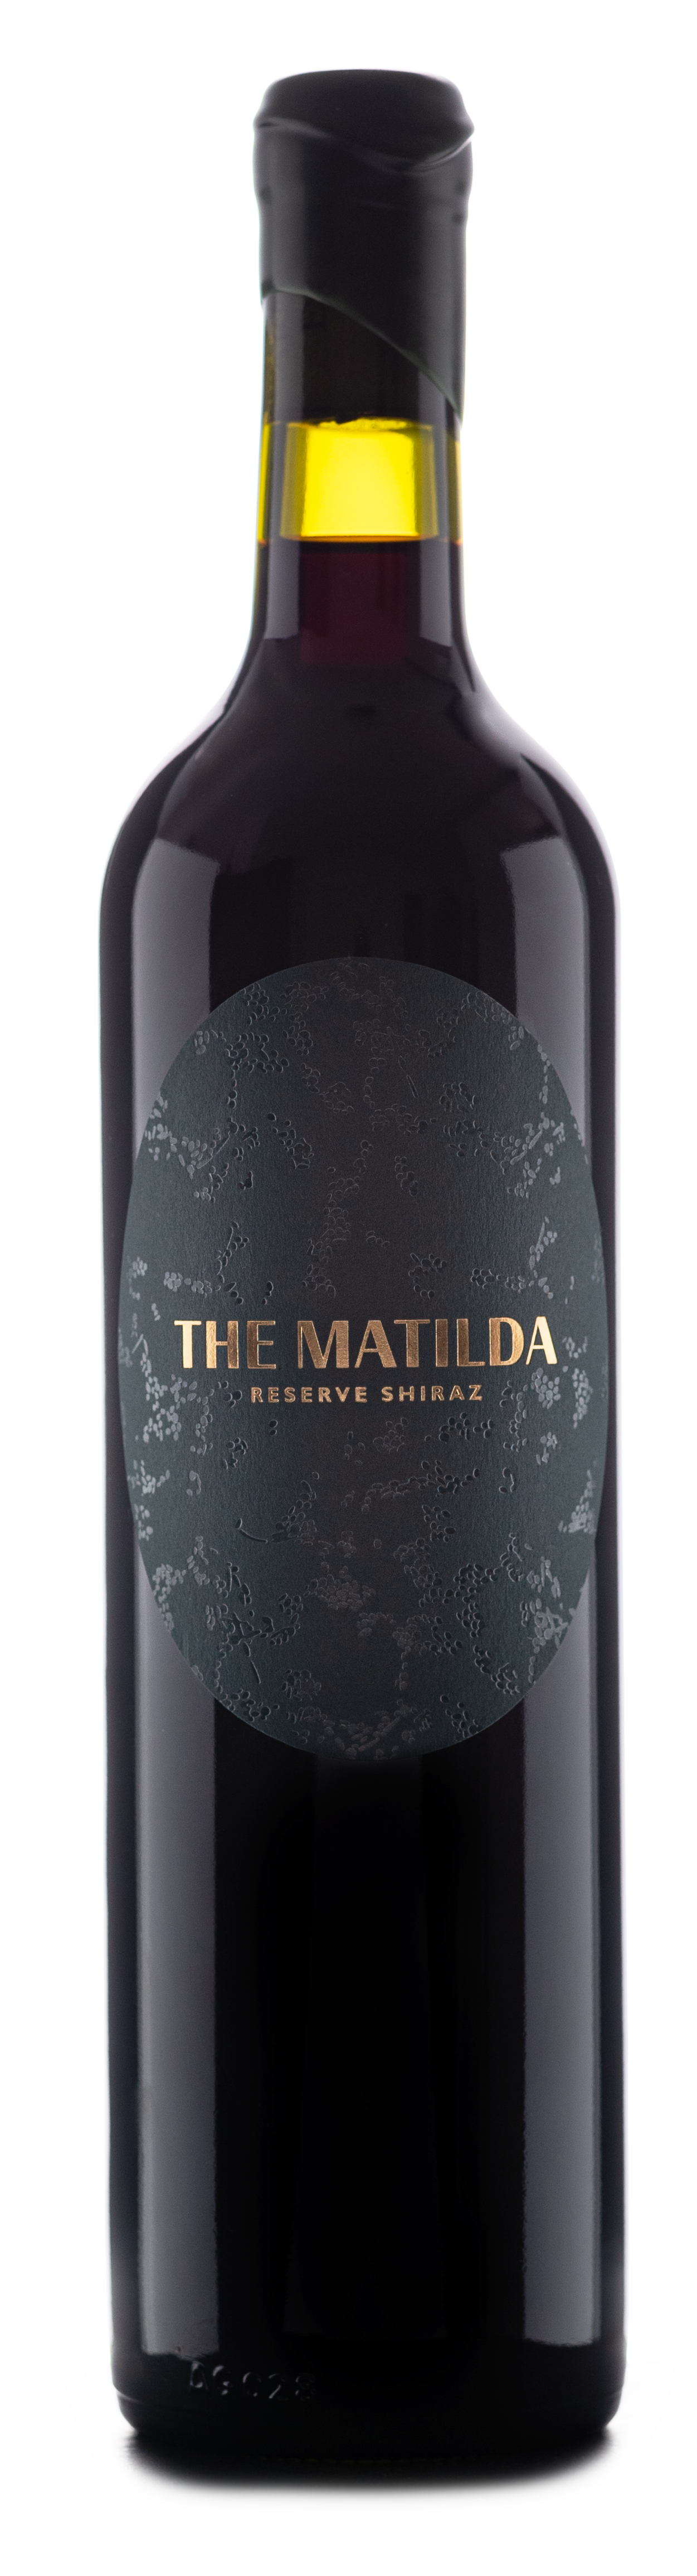 2019 Matilda Reserve Shiraz